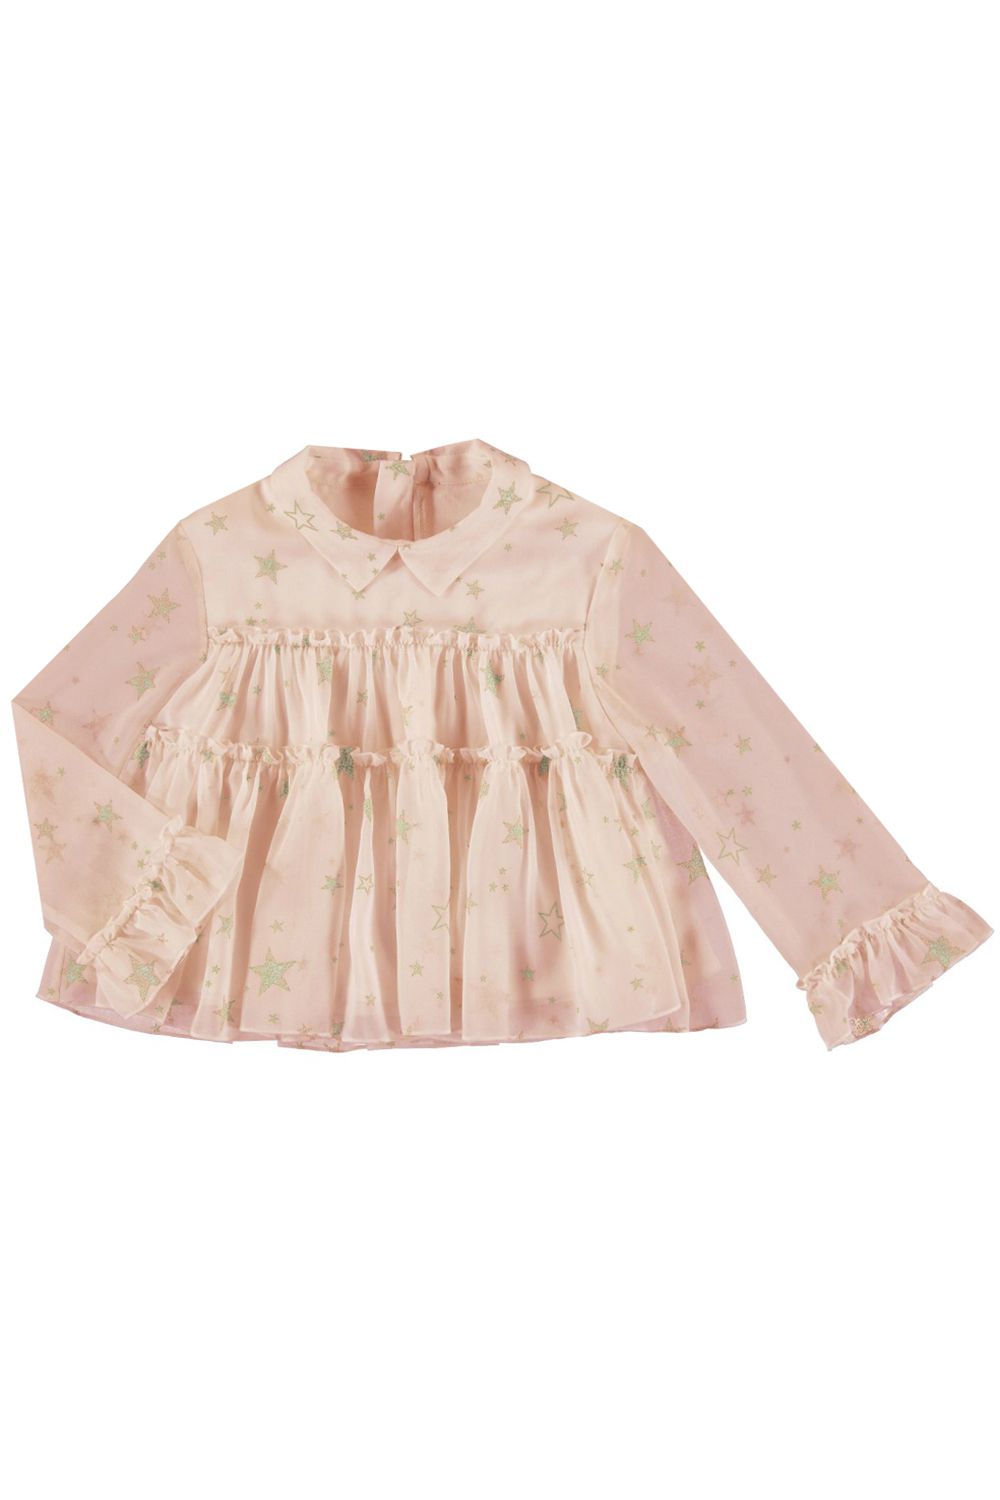 Блуза Mayoral, размер 98, цвет розовый - фото 1